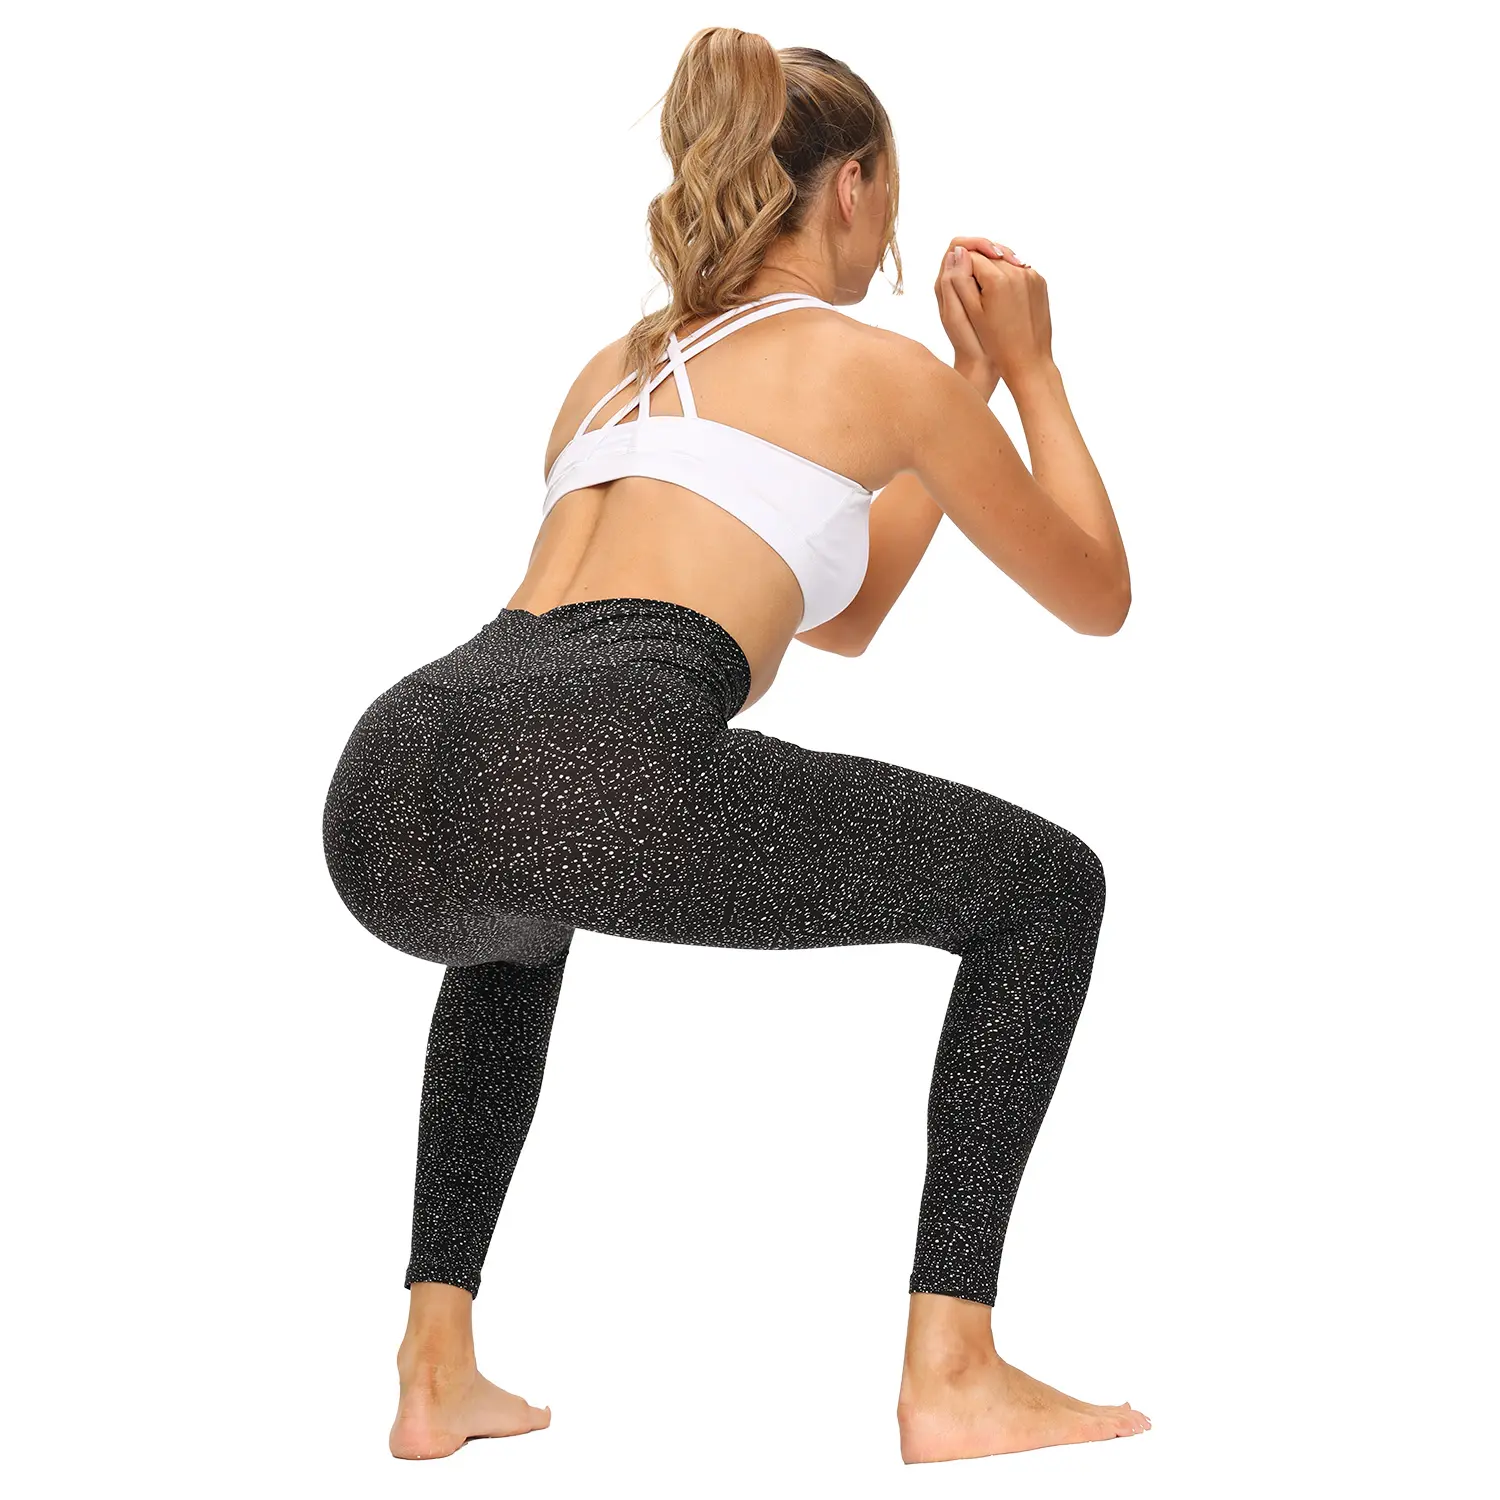 Bayan tayt özel Logo yüksek bel Yoga taytı kadınlar için klasik nefes kadın pantolon fabrika stokta karın kontrol